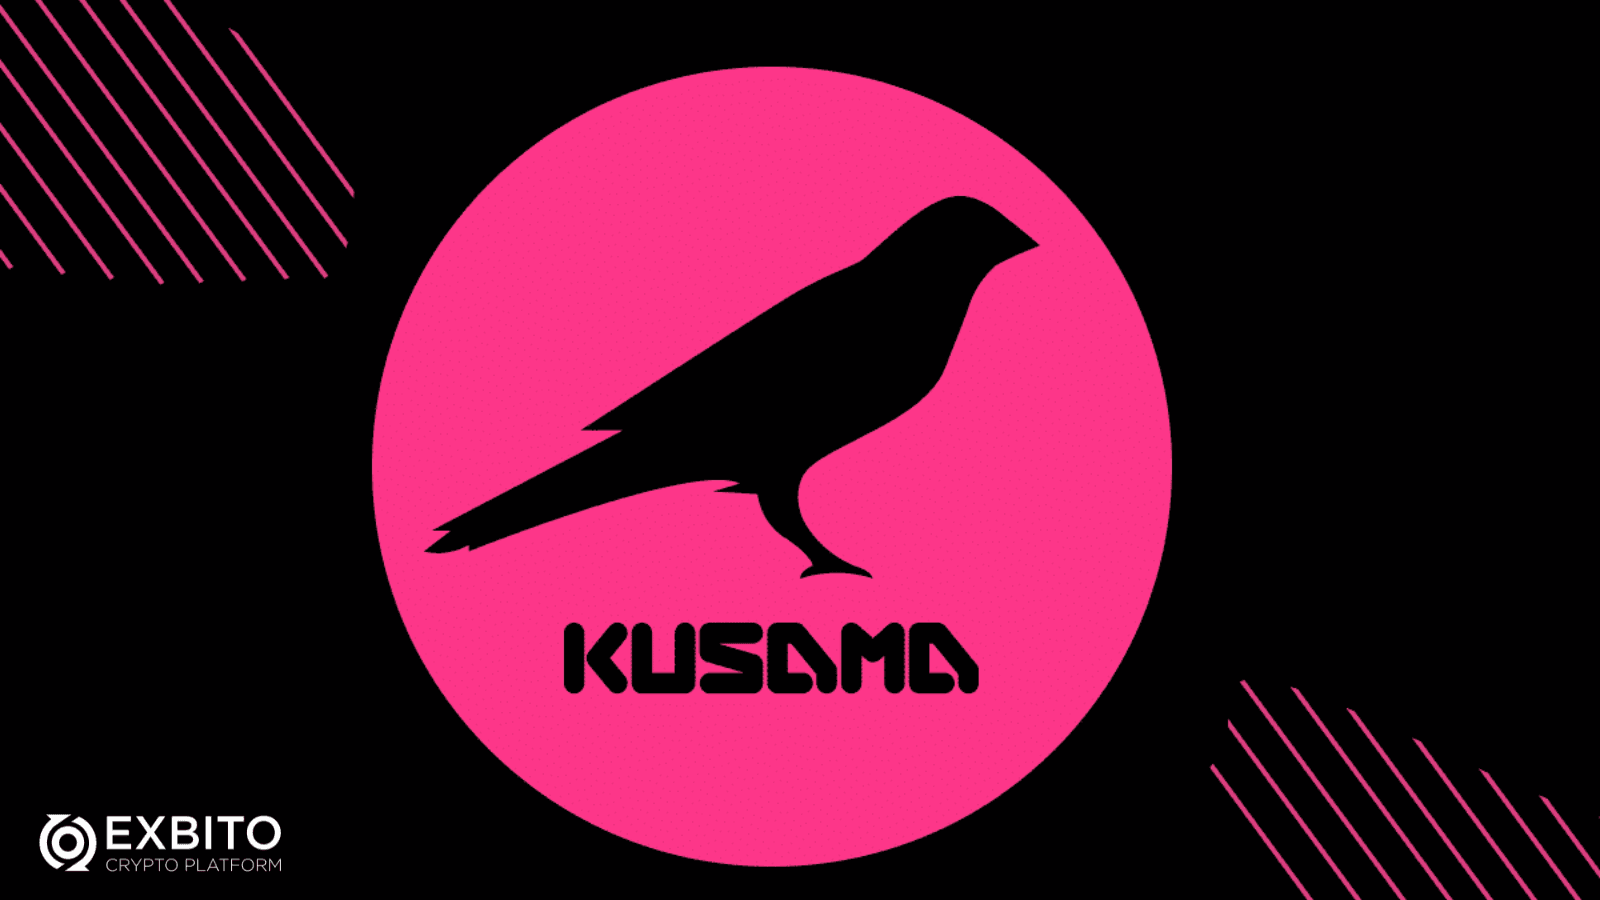  اکوسیستم کوزاما (The Kusama ecosystem)